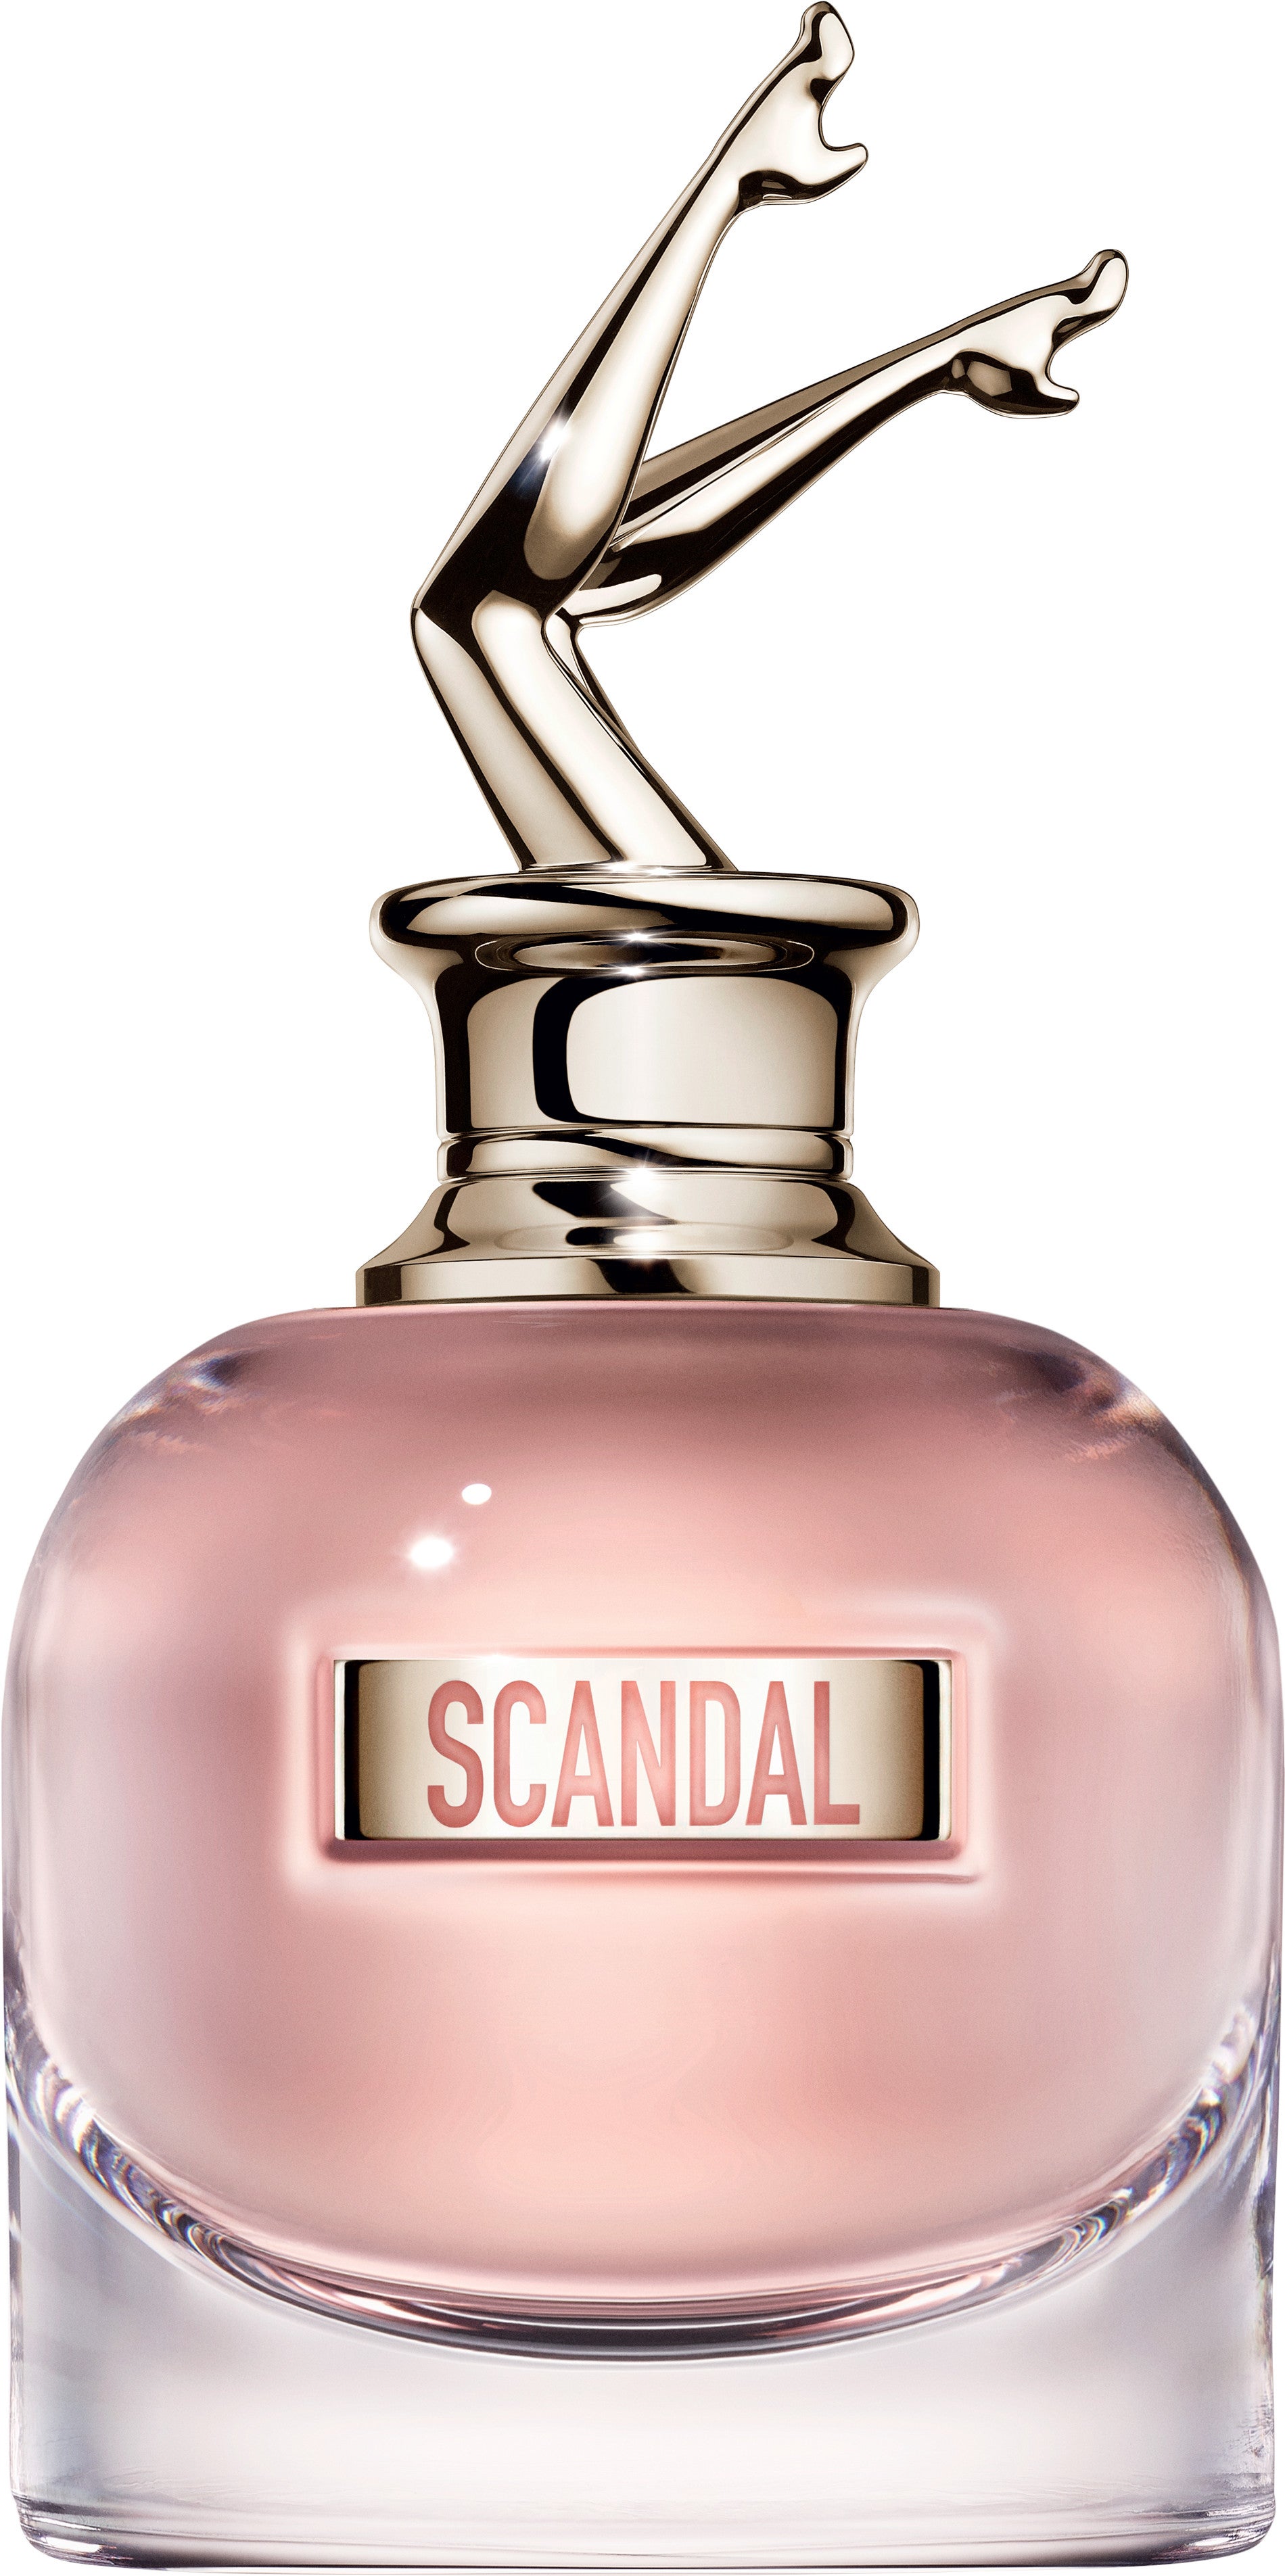 Jean Paul Gaultier Jean Paul Gaultier Scandal 80ml EDP Women's Perfume